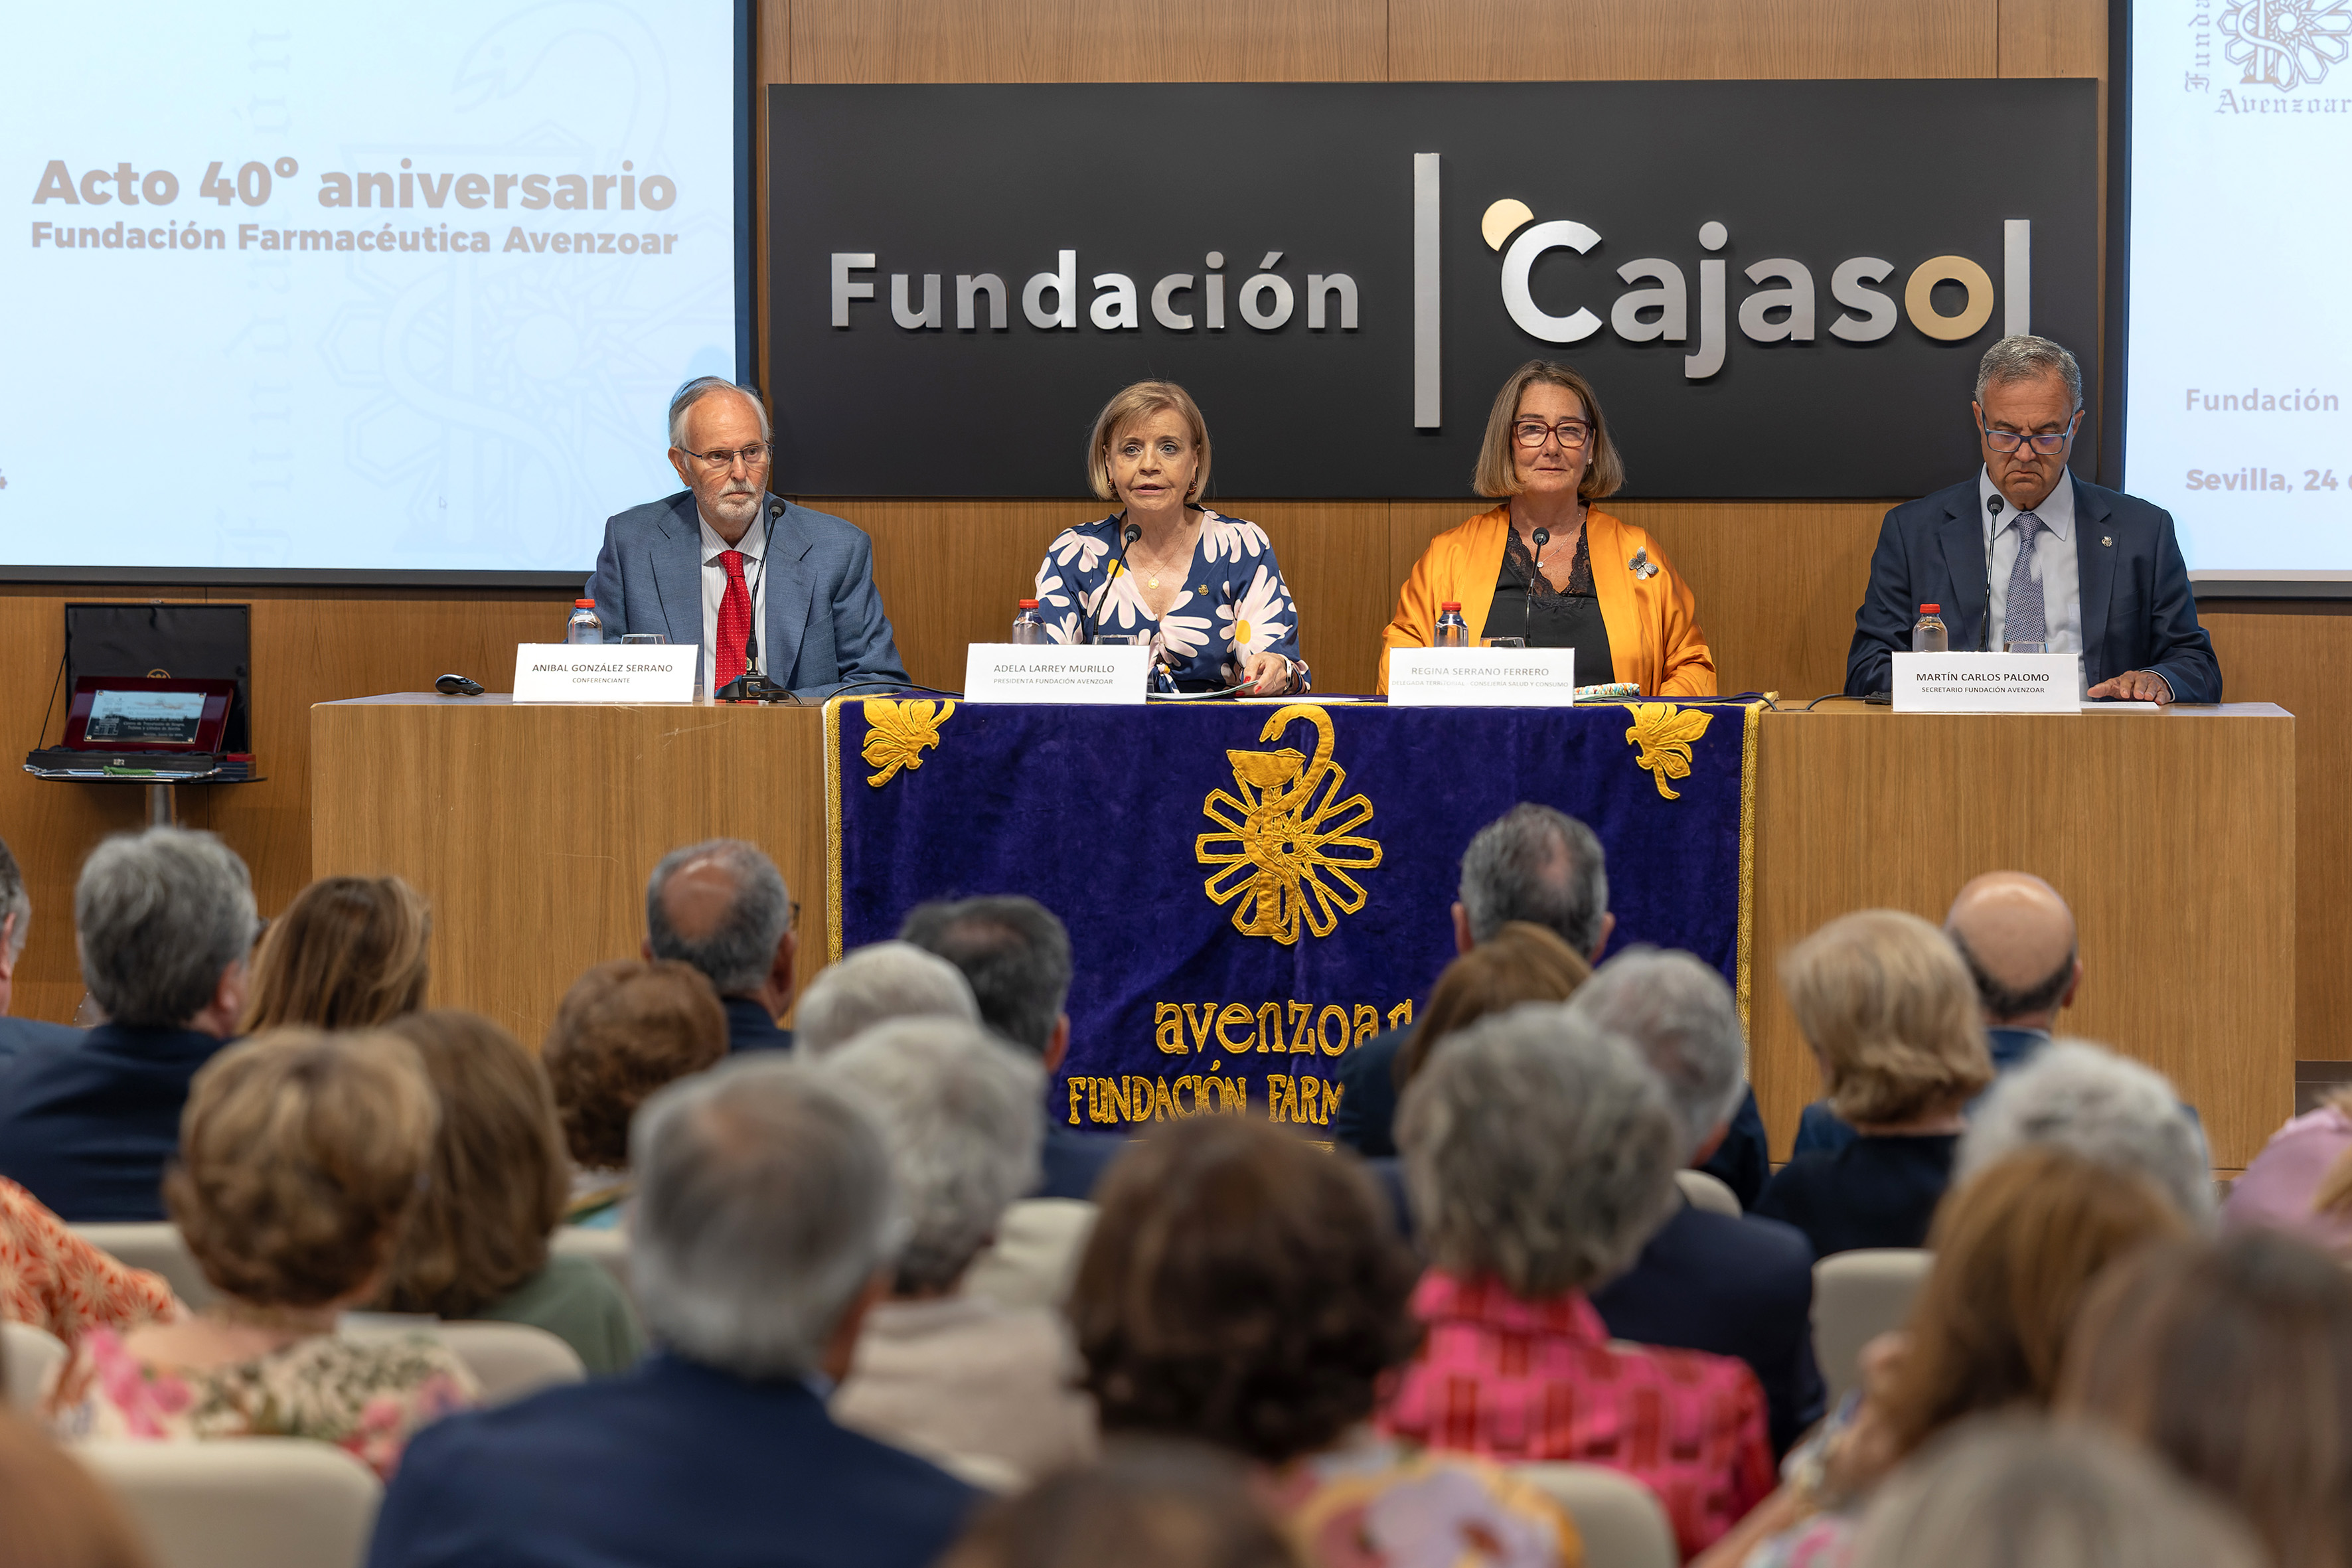 La Fundación Avenzoar reconoce en su 40º aniversario la trayectoria del Manuel Pérez Fernández, presidente del Colegio de Farmacéuticos de Sevilla durante 23 años